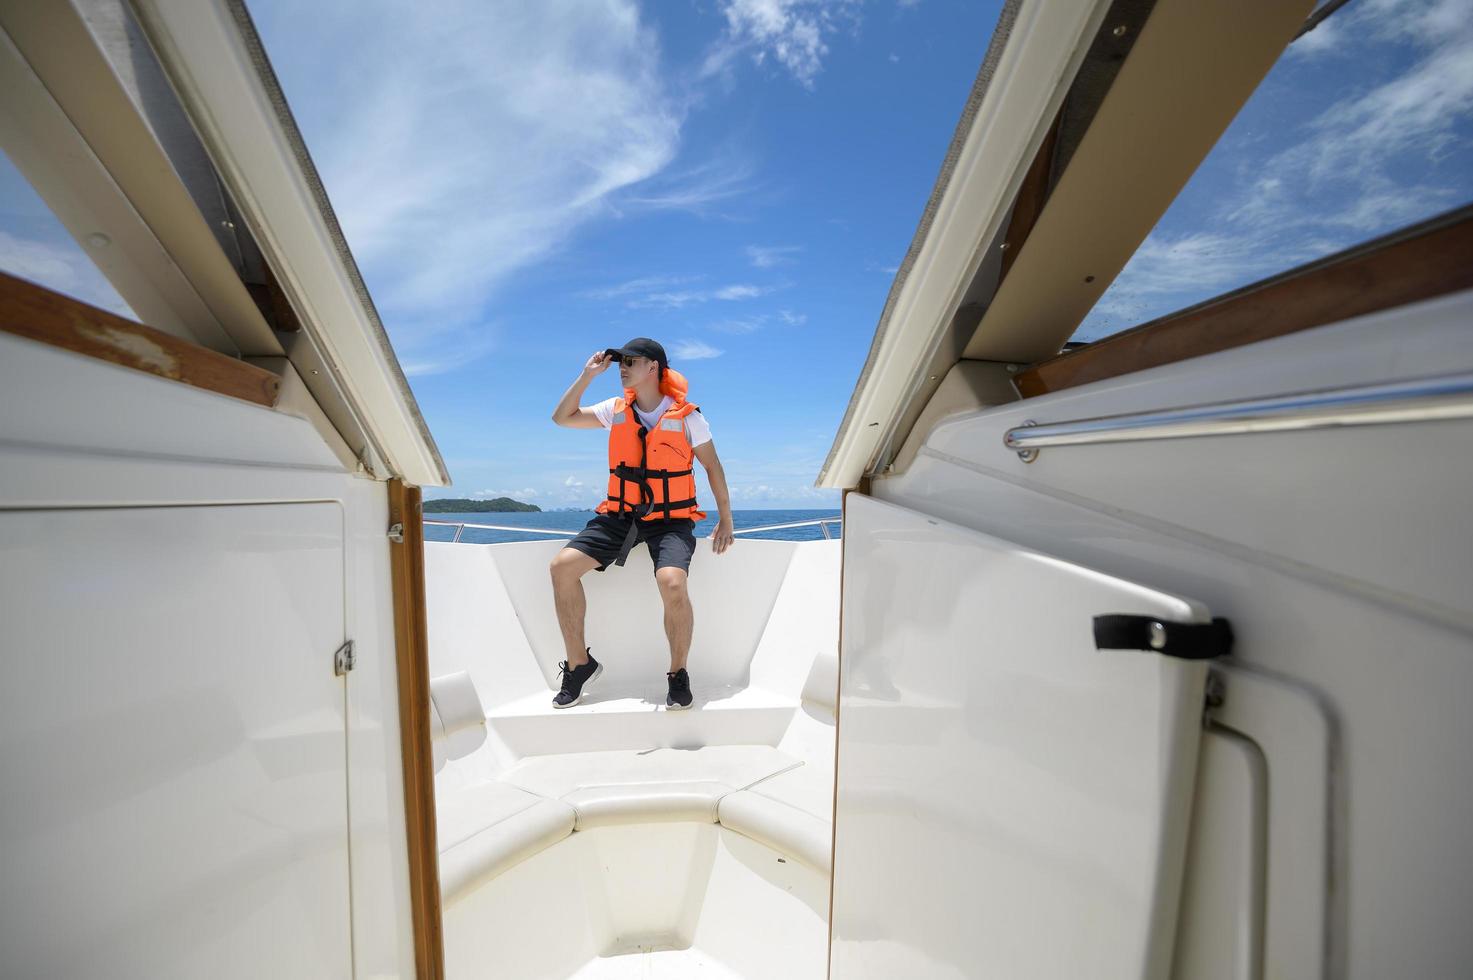 toerist in reddingsvest genieten en ontspannen op speedboot met een prachtig uitzicht op de oceaan en de bergen in achtergrondkleur foto